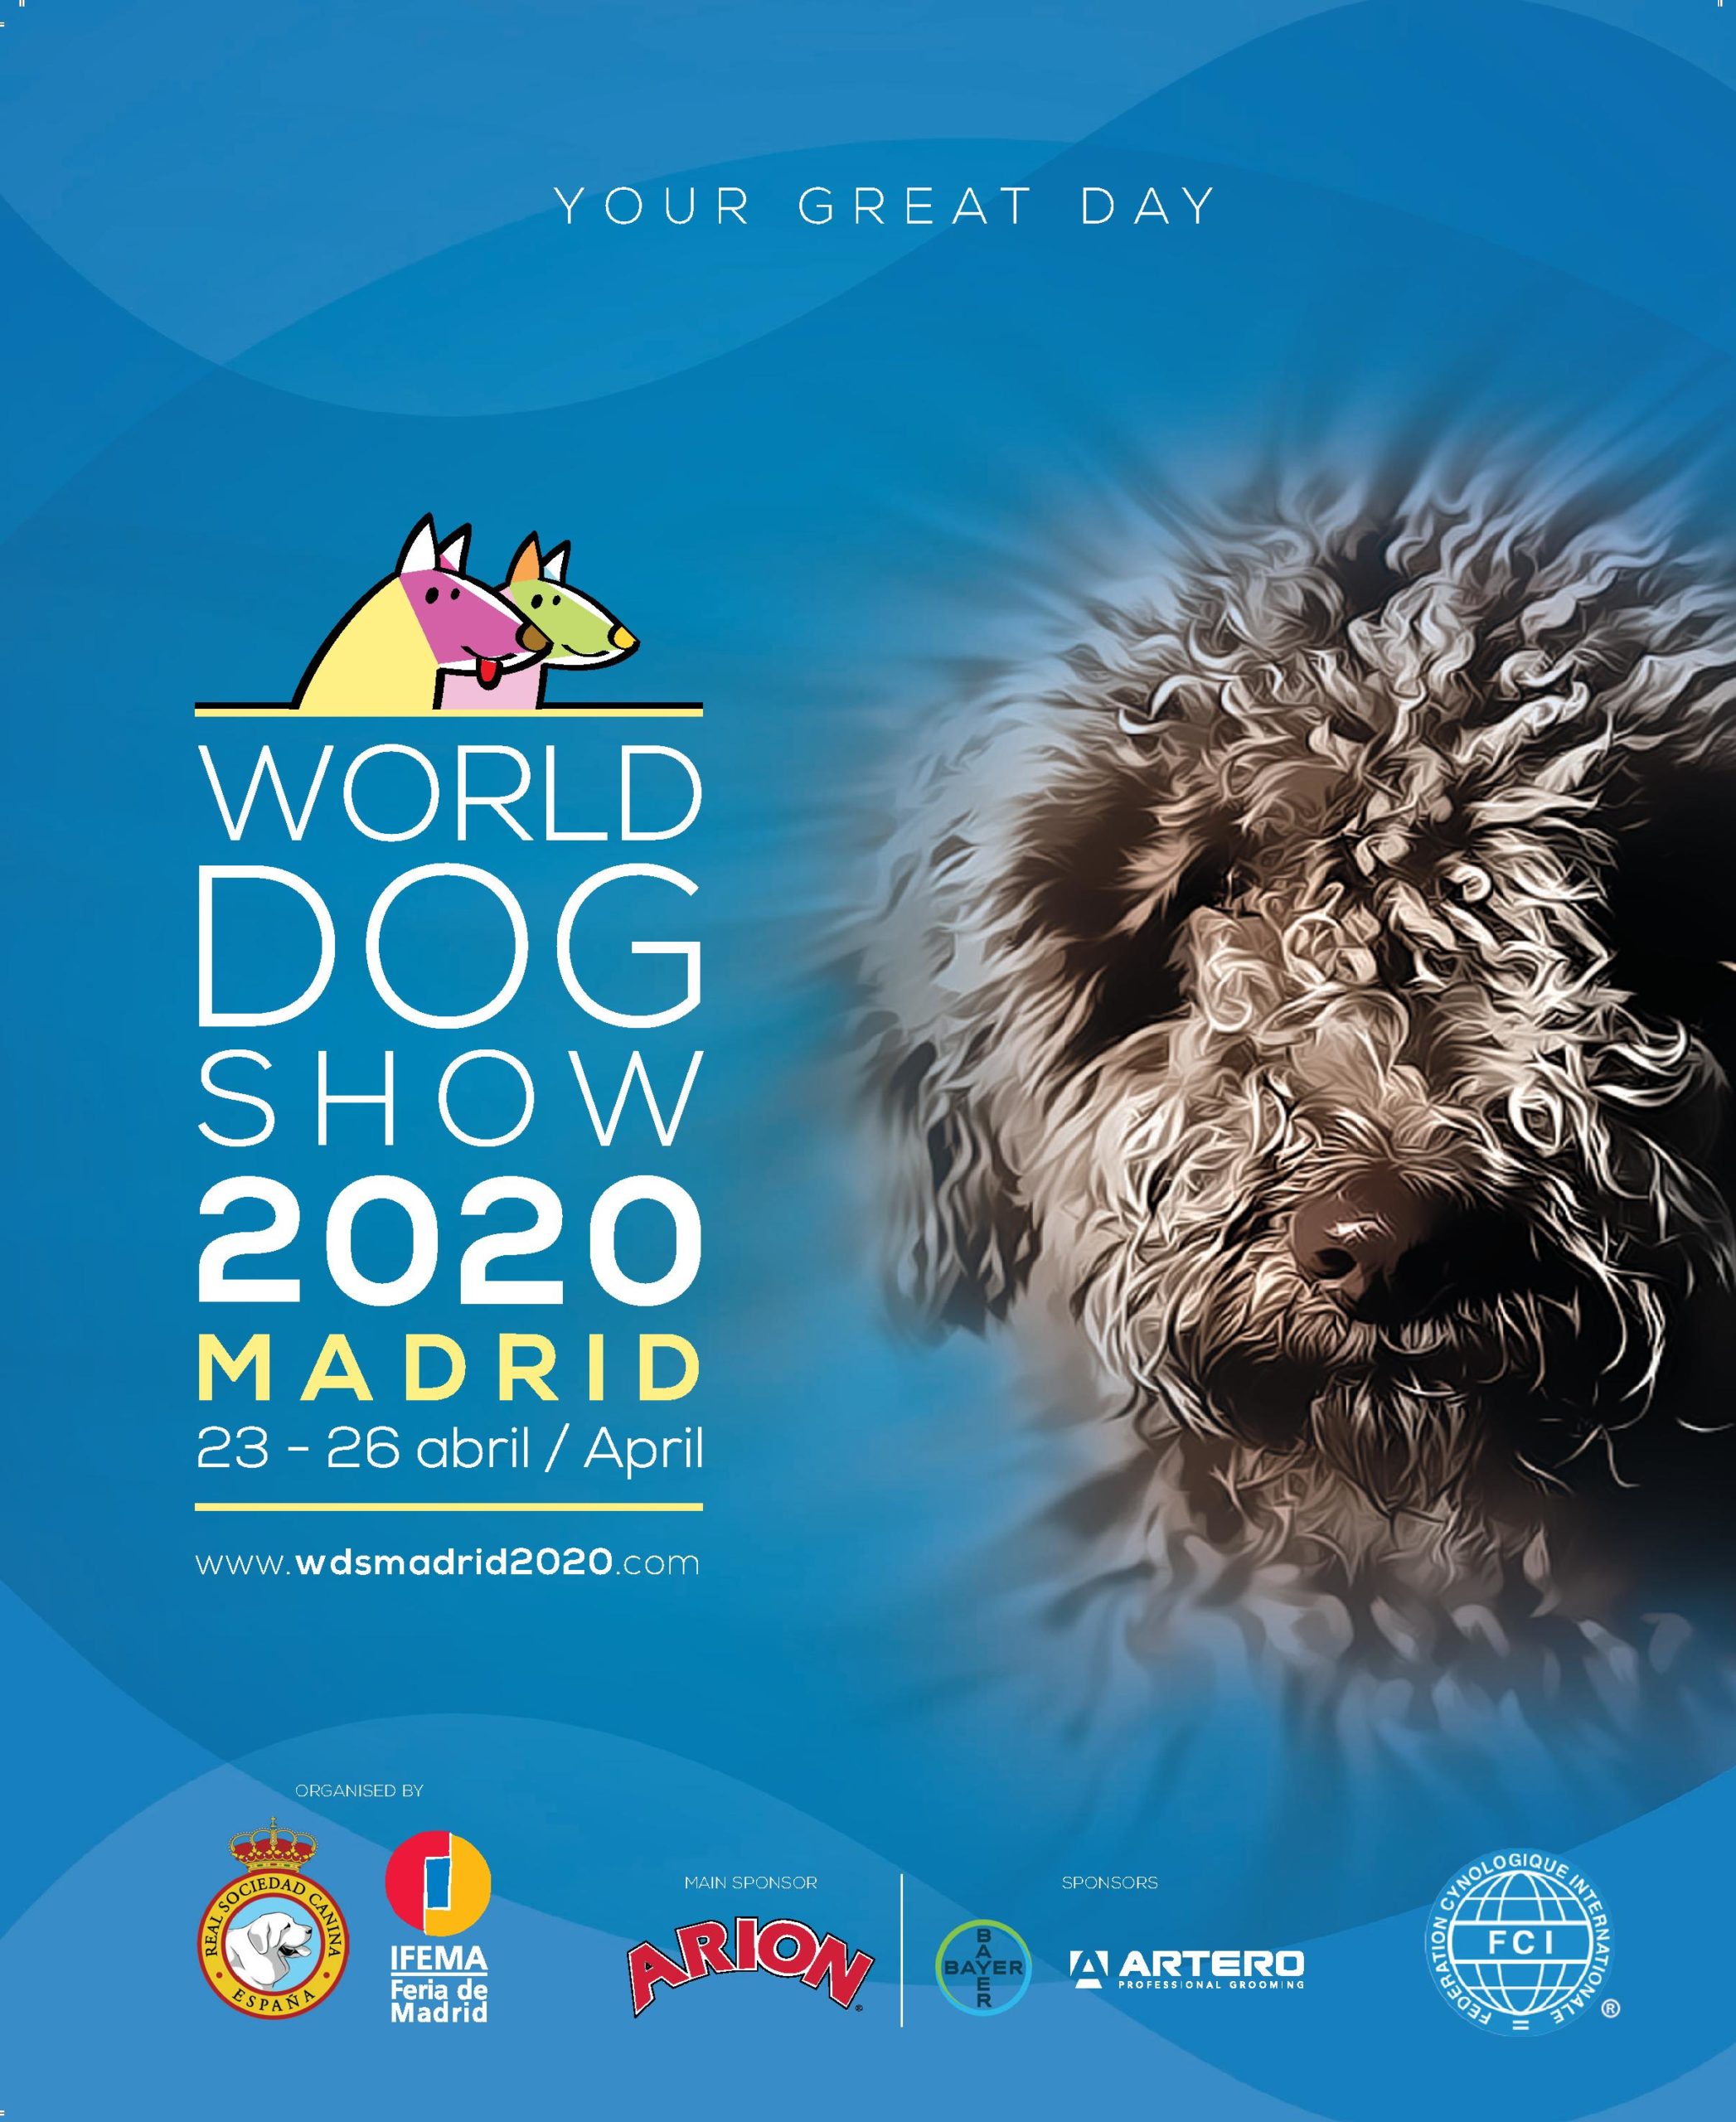 ¿Qué es el World Dog Show?